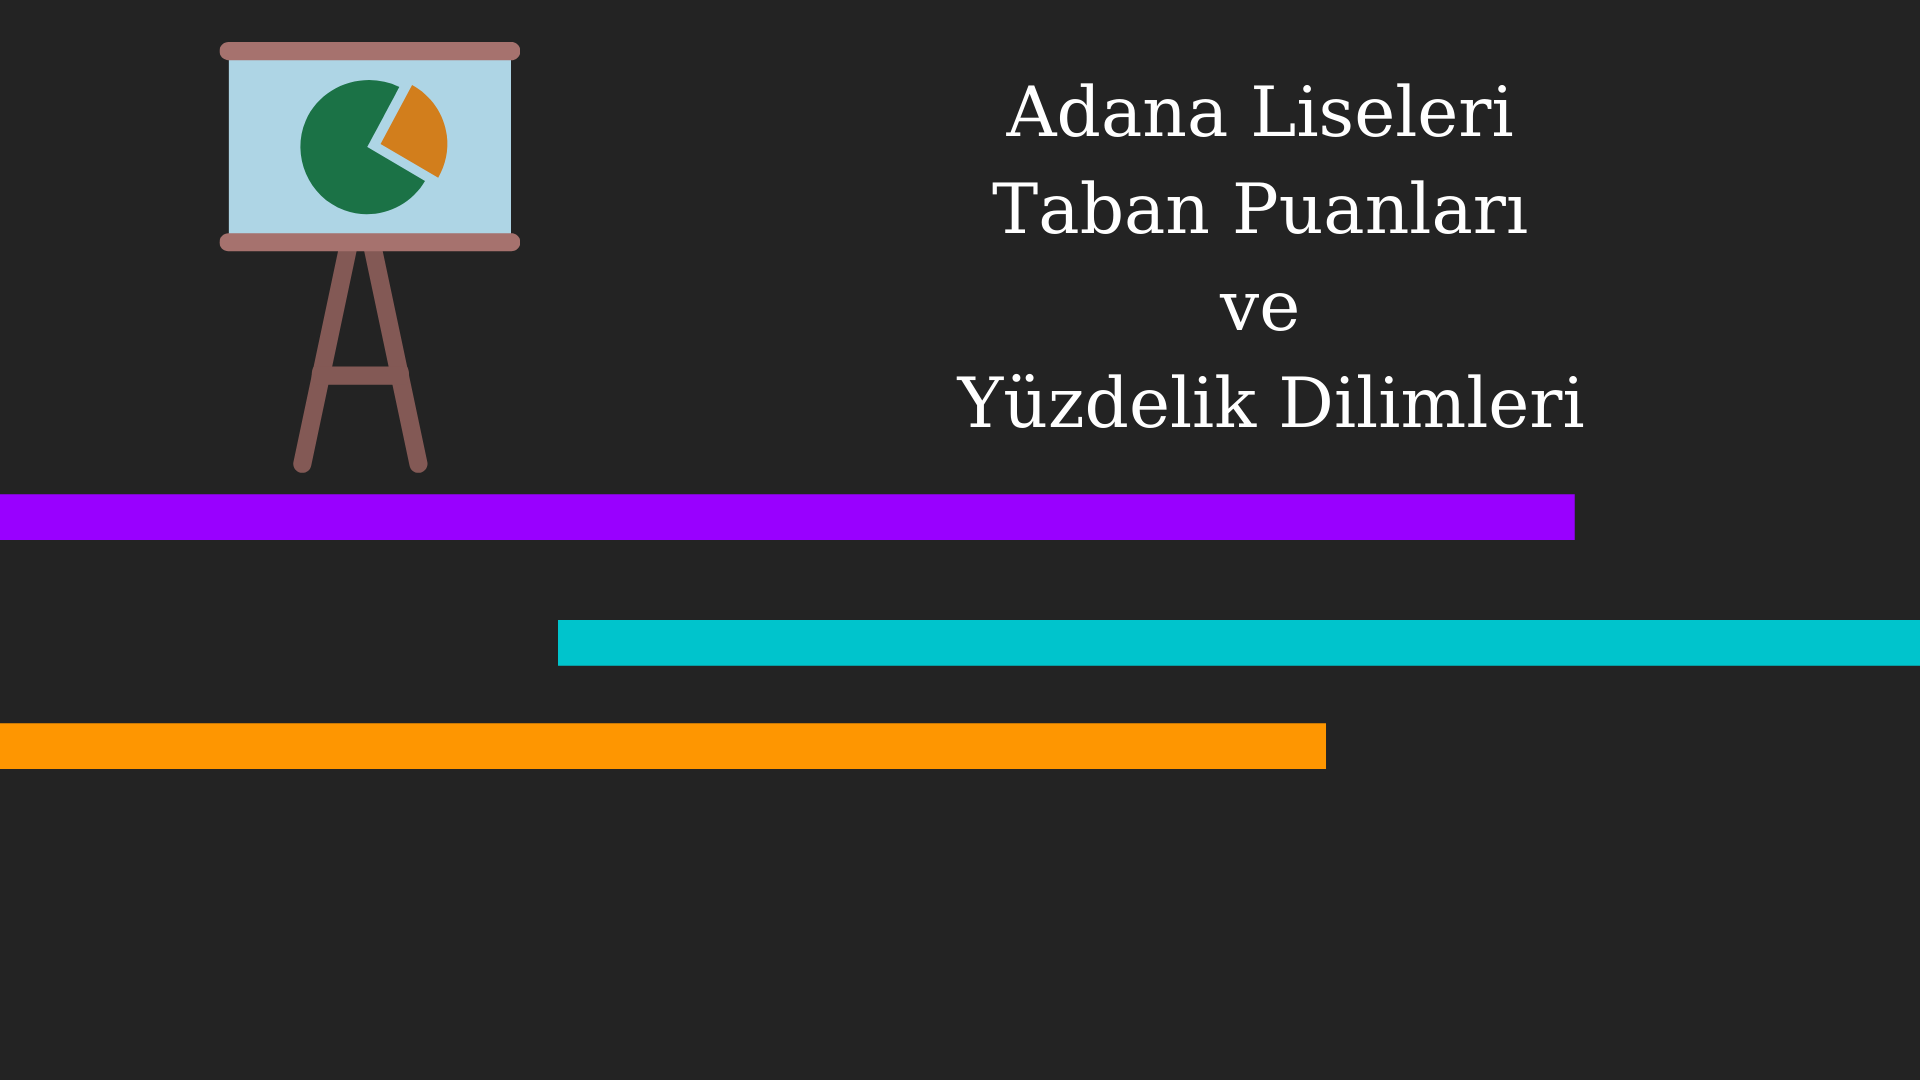 Adana Anadolu Liseleri Yüzdelik Dilimleri 2021